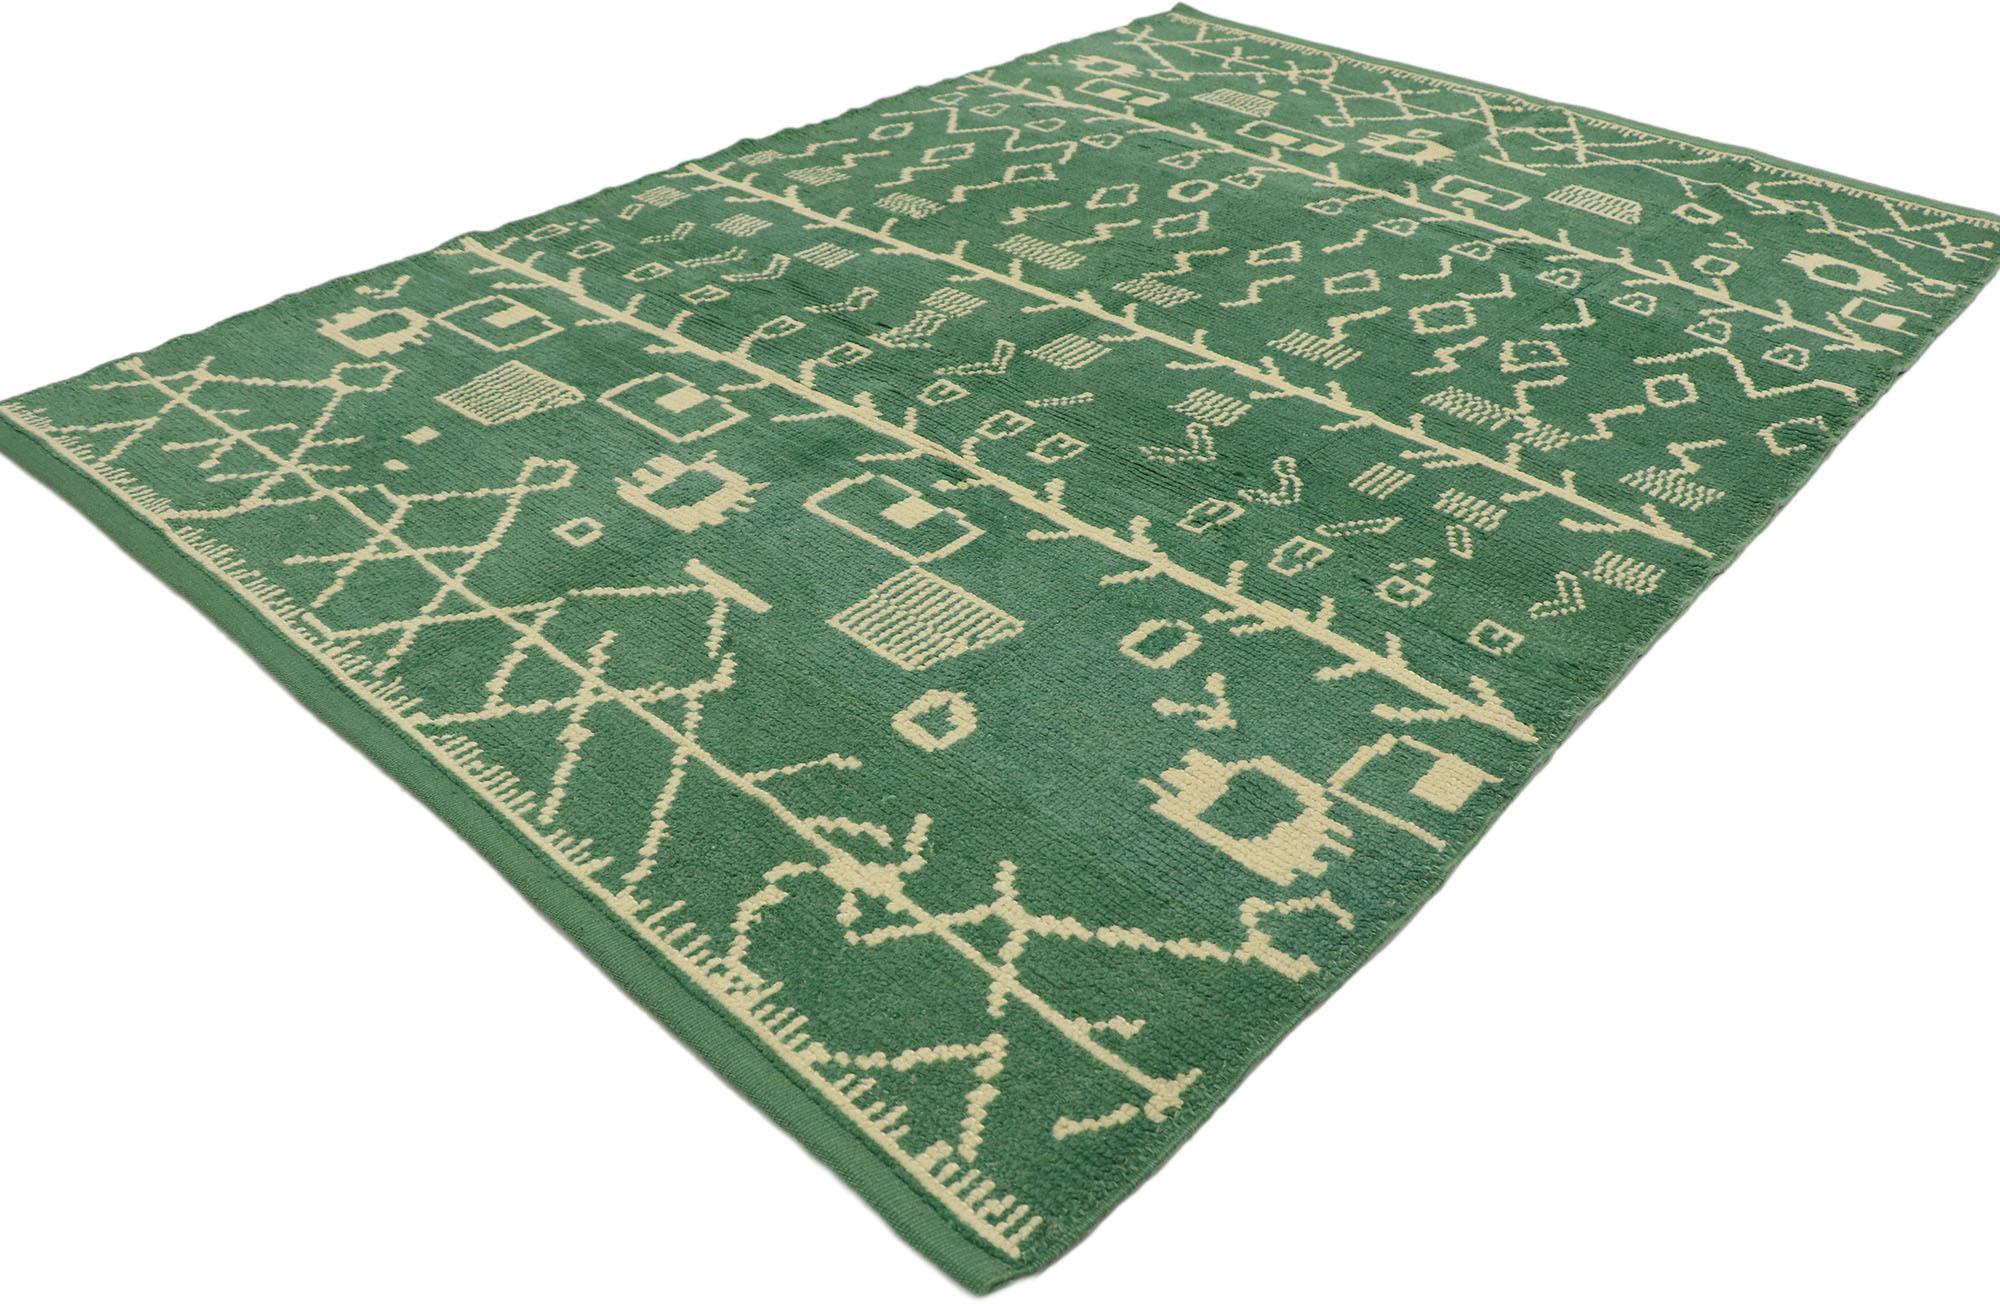 53193 Neuer zeitgenössischer grüner marokkanischer Teppich mit postmodernem Tribal-Stil. Mit seiner ausgewogenen Asymmetrie und den geometrischen Formen und der kräftigen grünen Farbe verkörpert dieser handgeknüpfte Wollteppich im modernen